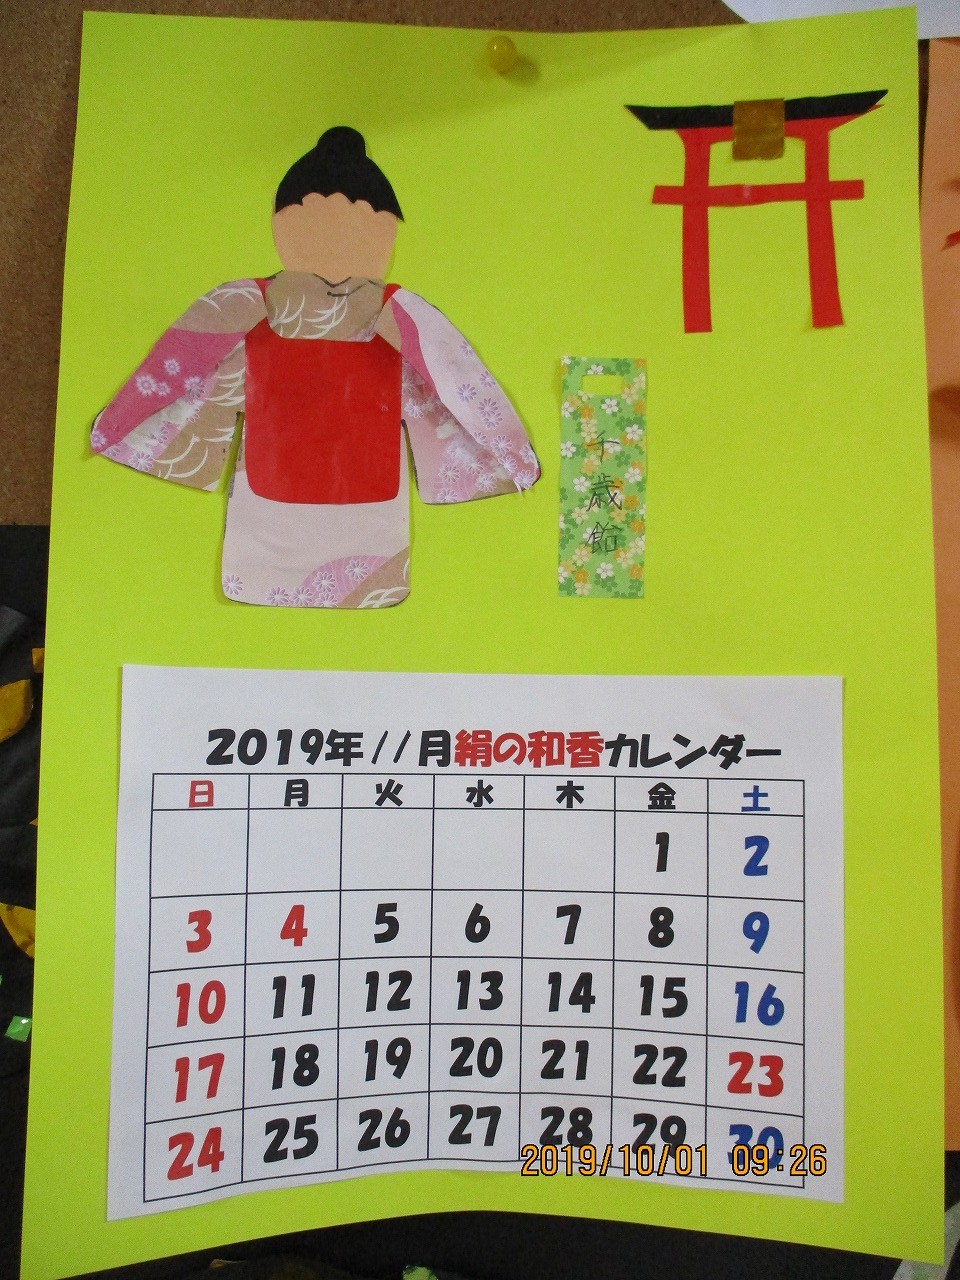 デイ サービス 11 月 カレンダー 手作り シモネタ